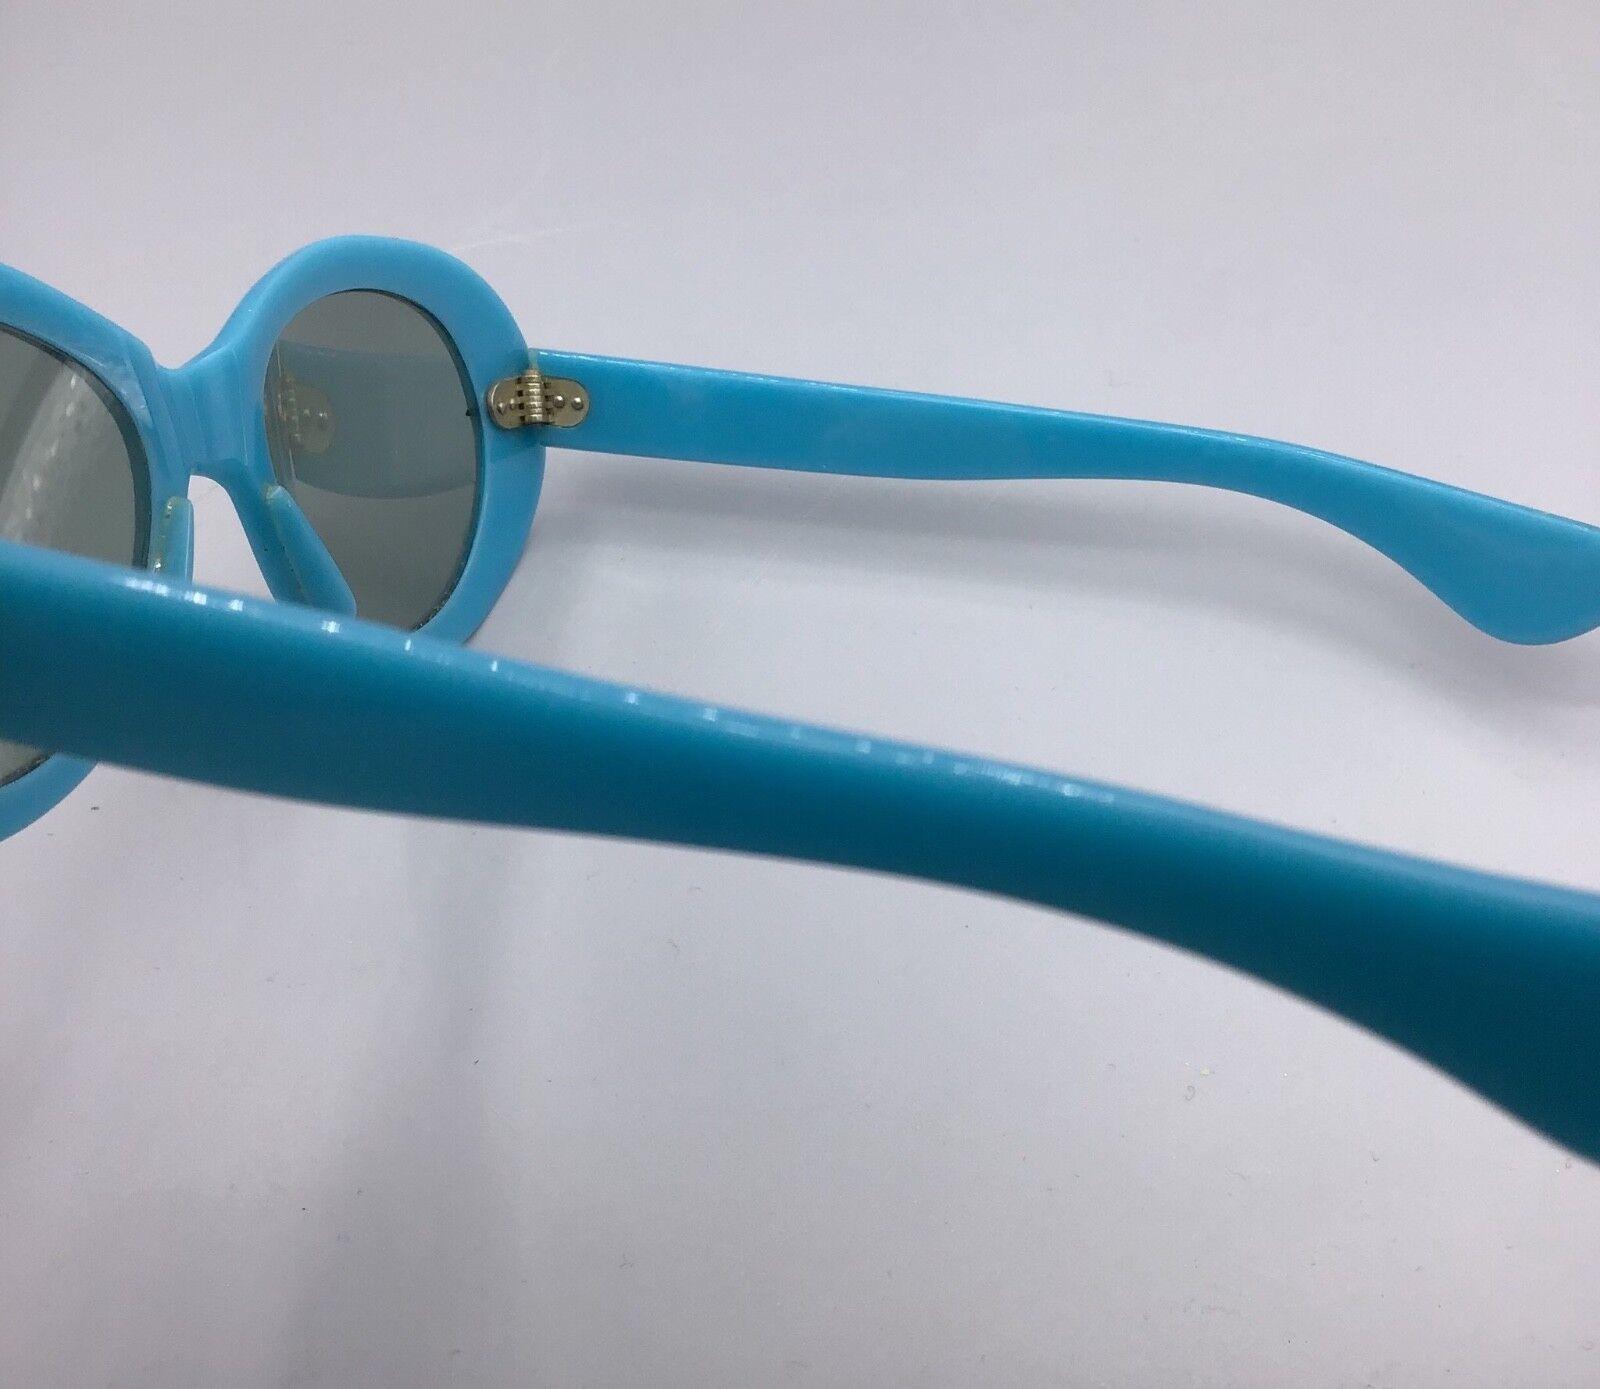 Zodiac Cristalli lavorati lens lenti occhiale vintage da sole Sunglasses